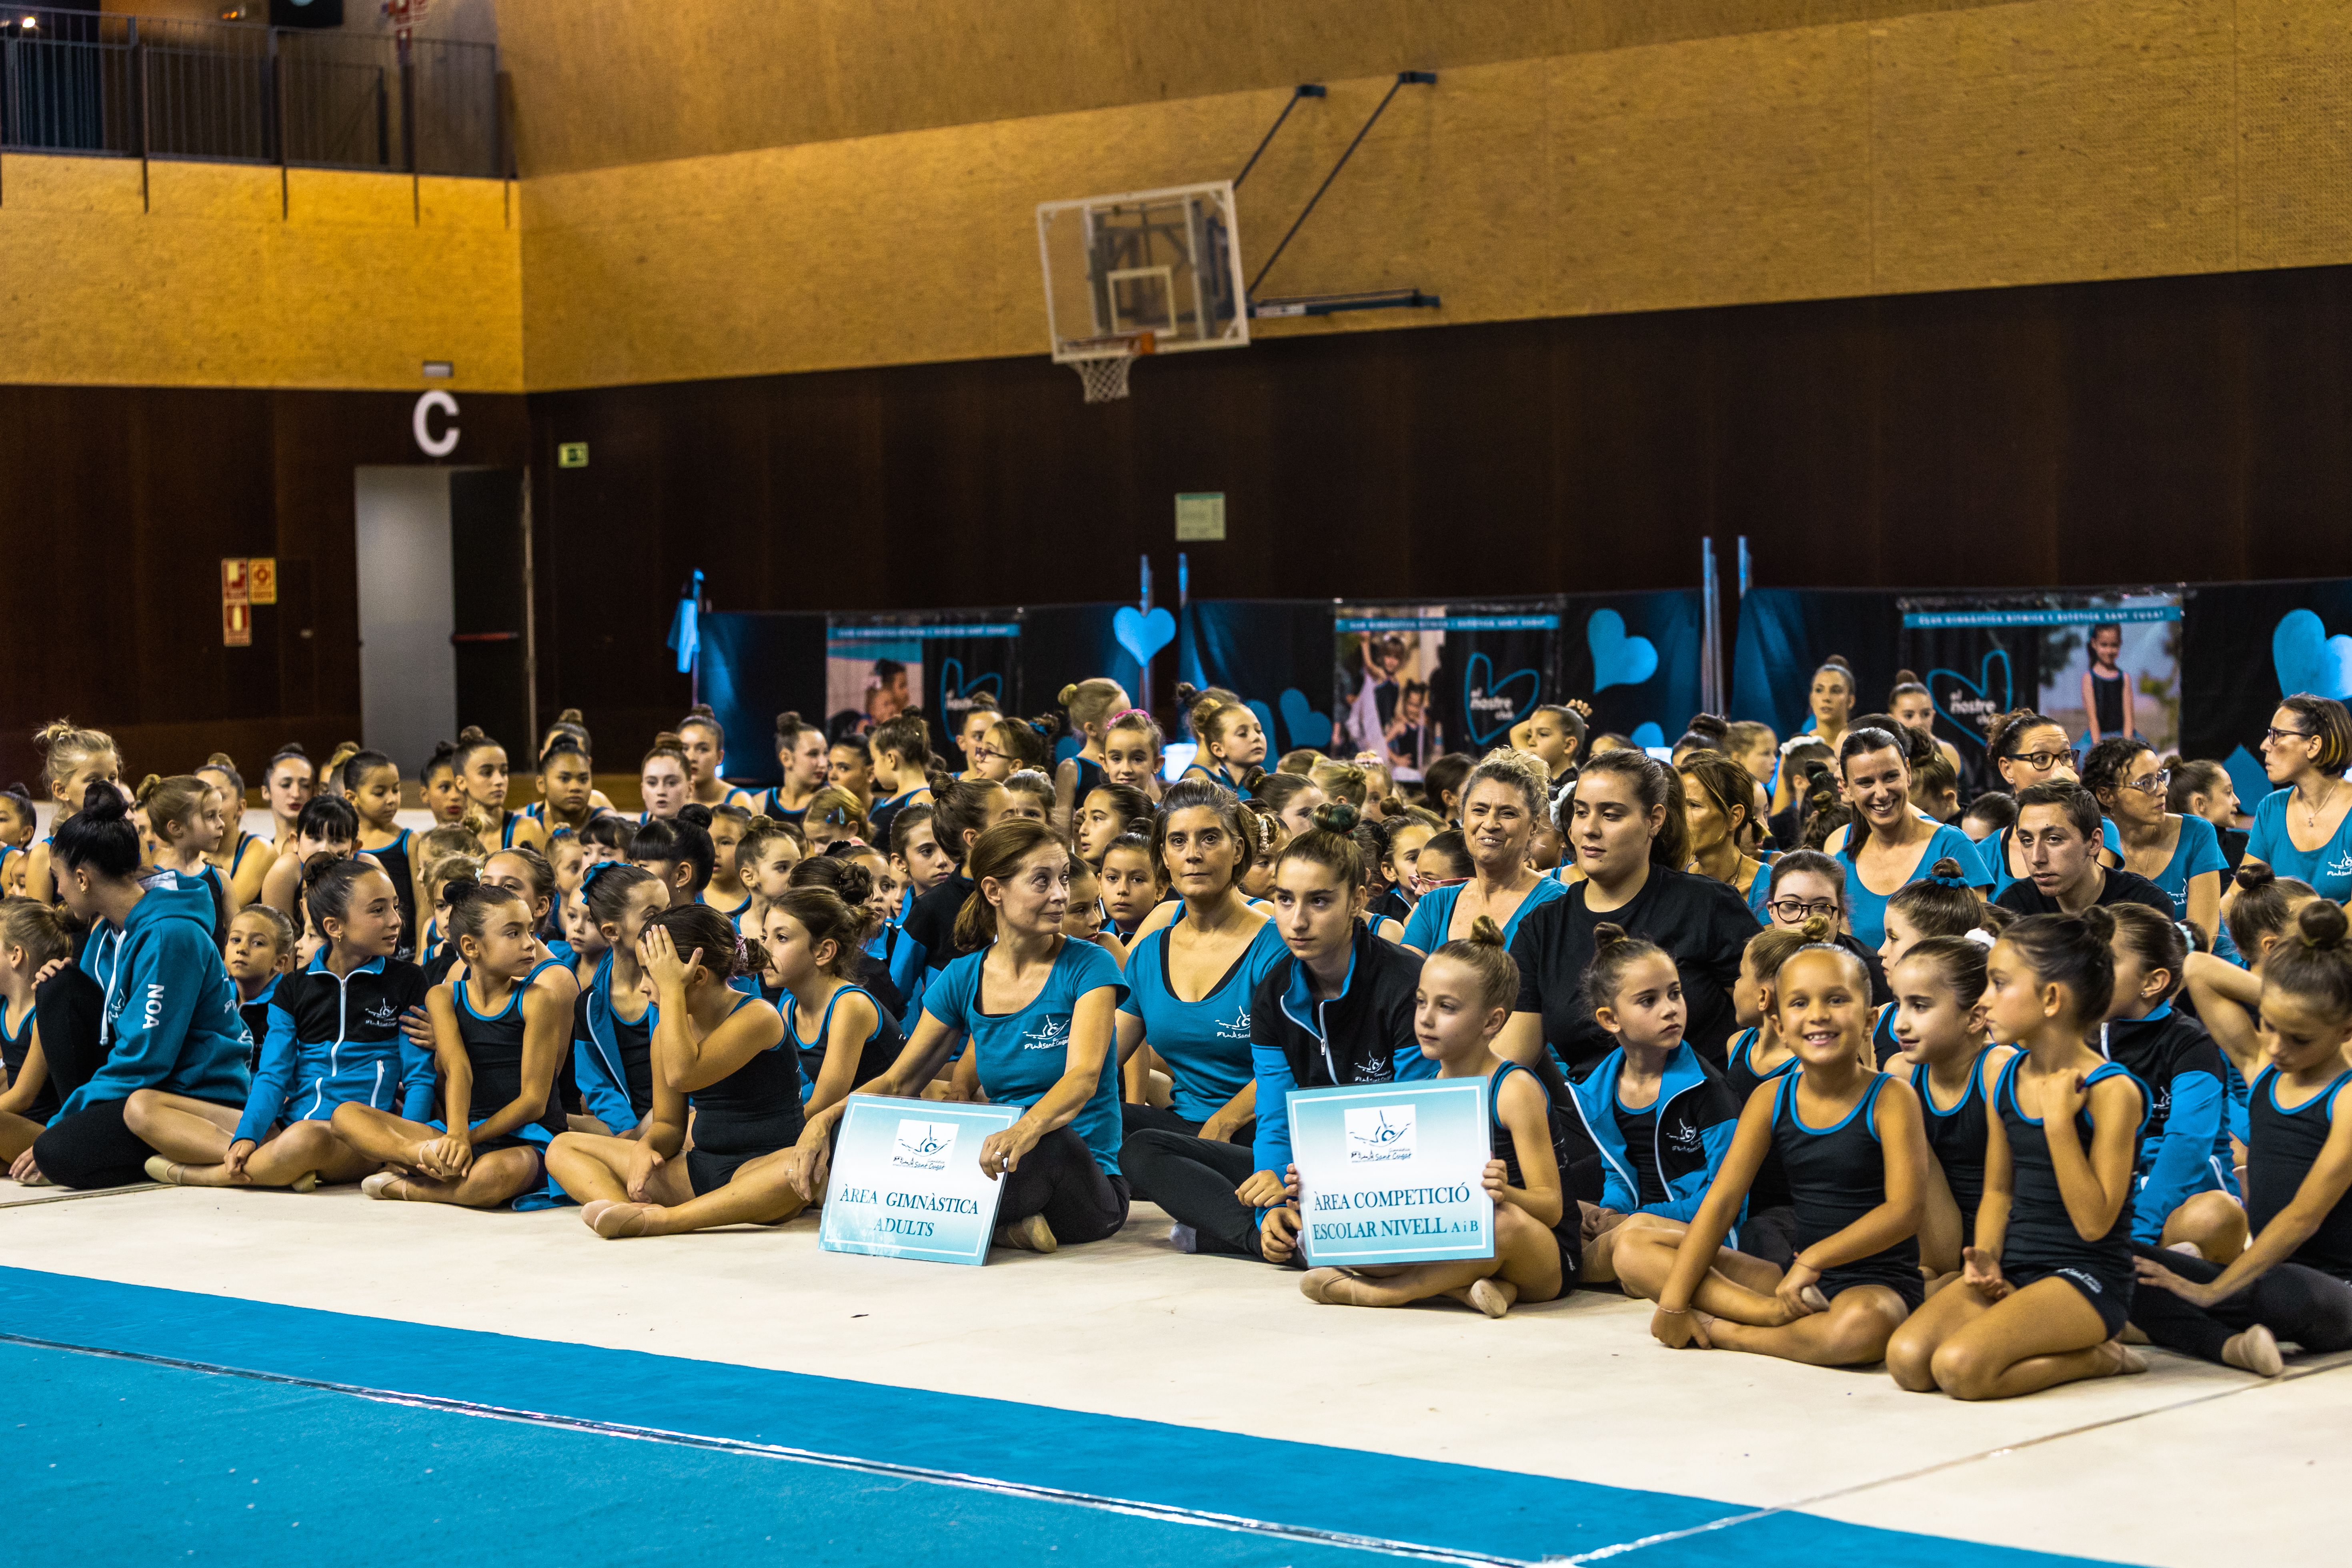 Presentació i exhibició dels equips del club i la selecció espnayola de gimnàstica. FOTO: Arnau Padilla